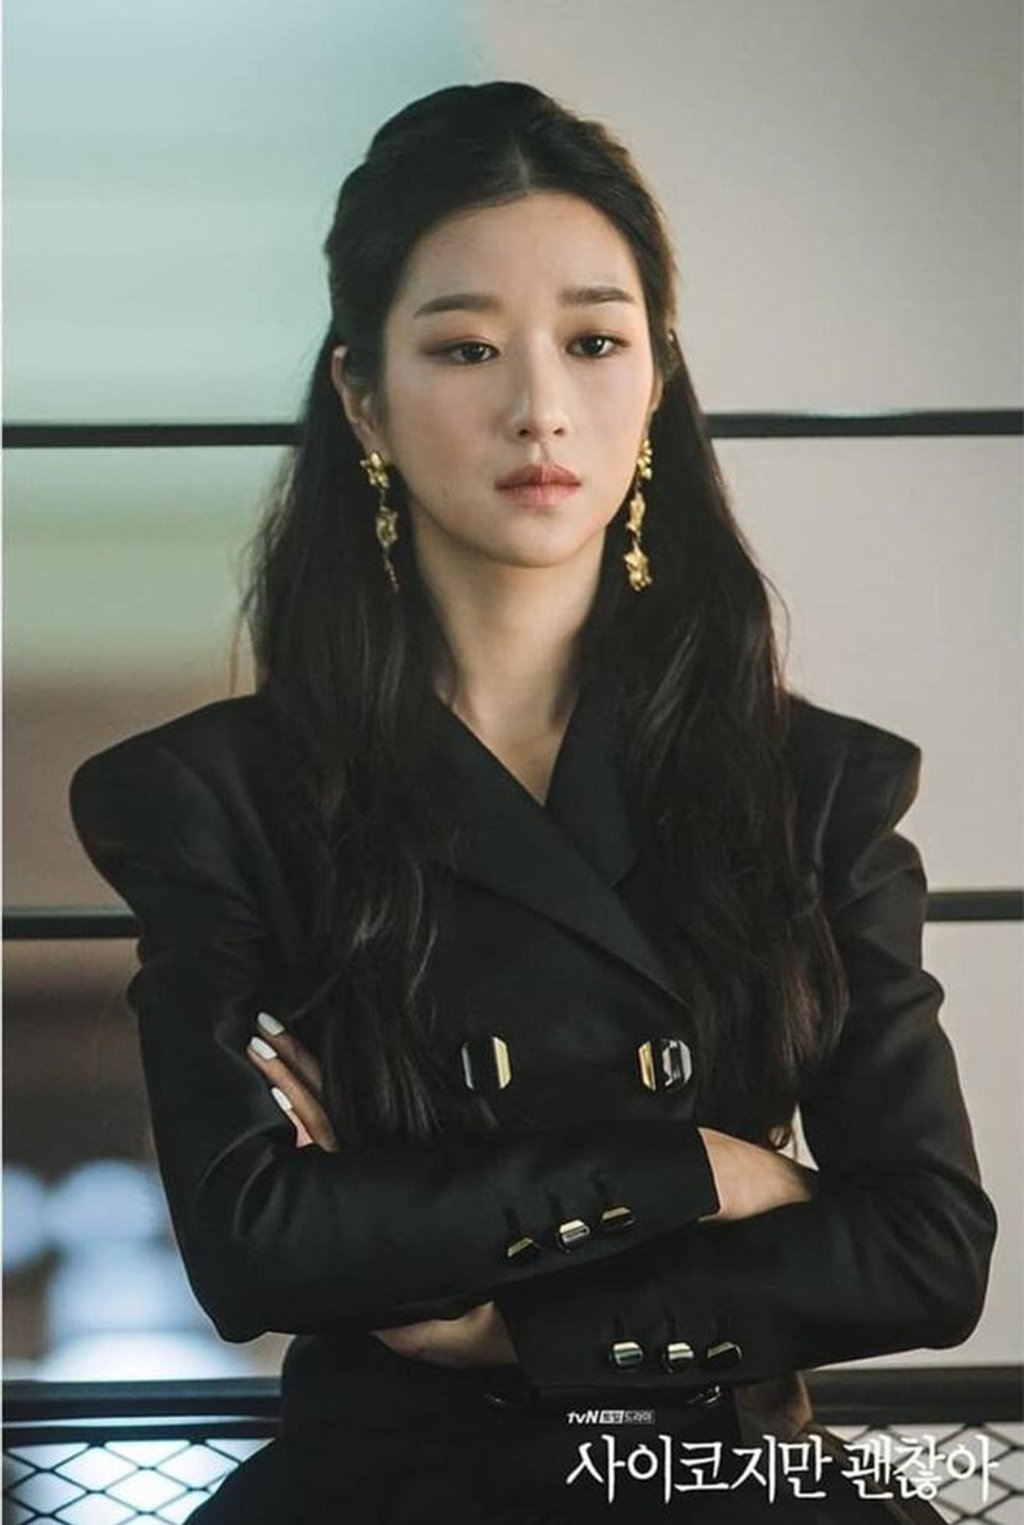 Trang phục hàng hiệu thời thượng giúp hình ảnh của Seo Ye Ji, IU trong phim thêm hoàn hảo, bắt mắt